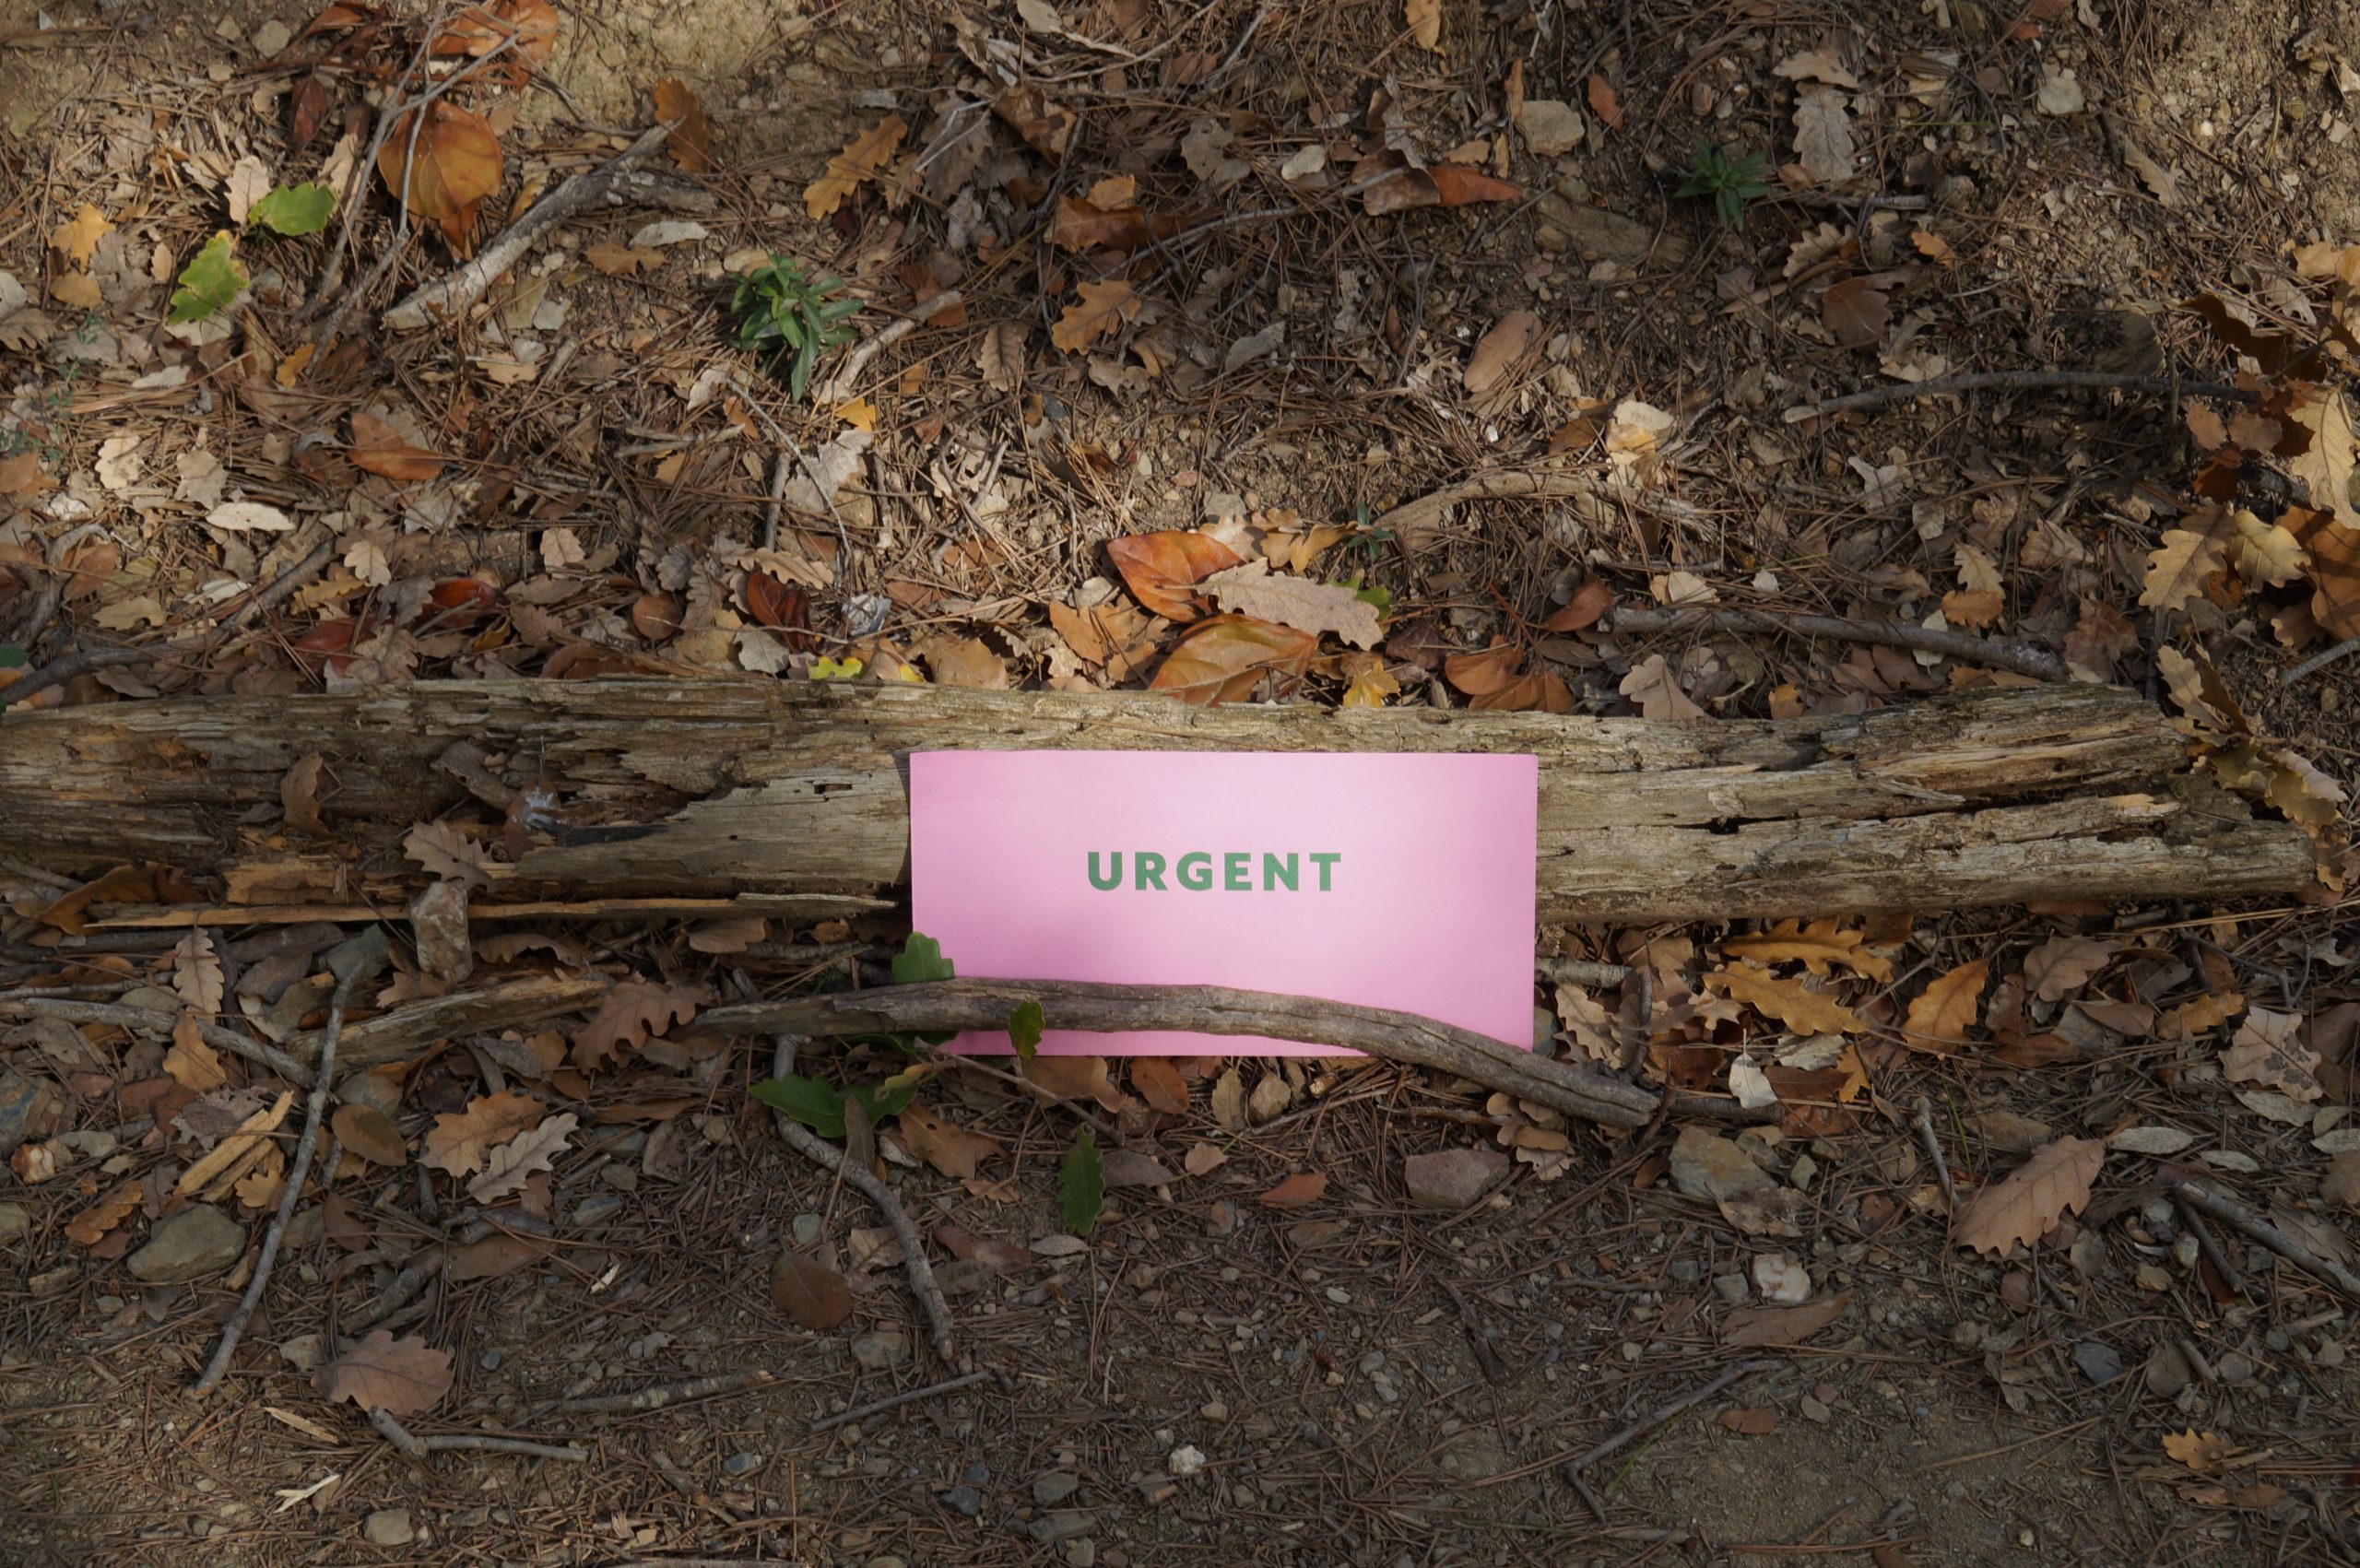 La paraula "urgent" esperant a ser trobada durant una activitat de la deriva del projecte Temps al bosc. Font: Diego de la Vega.